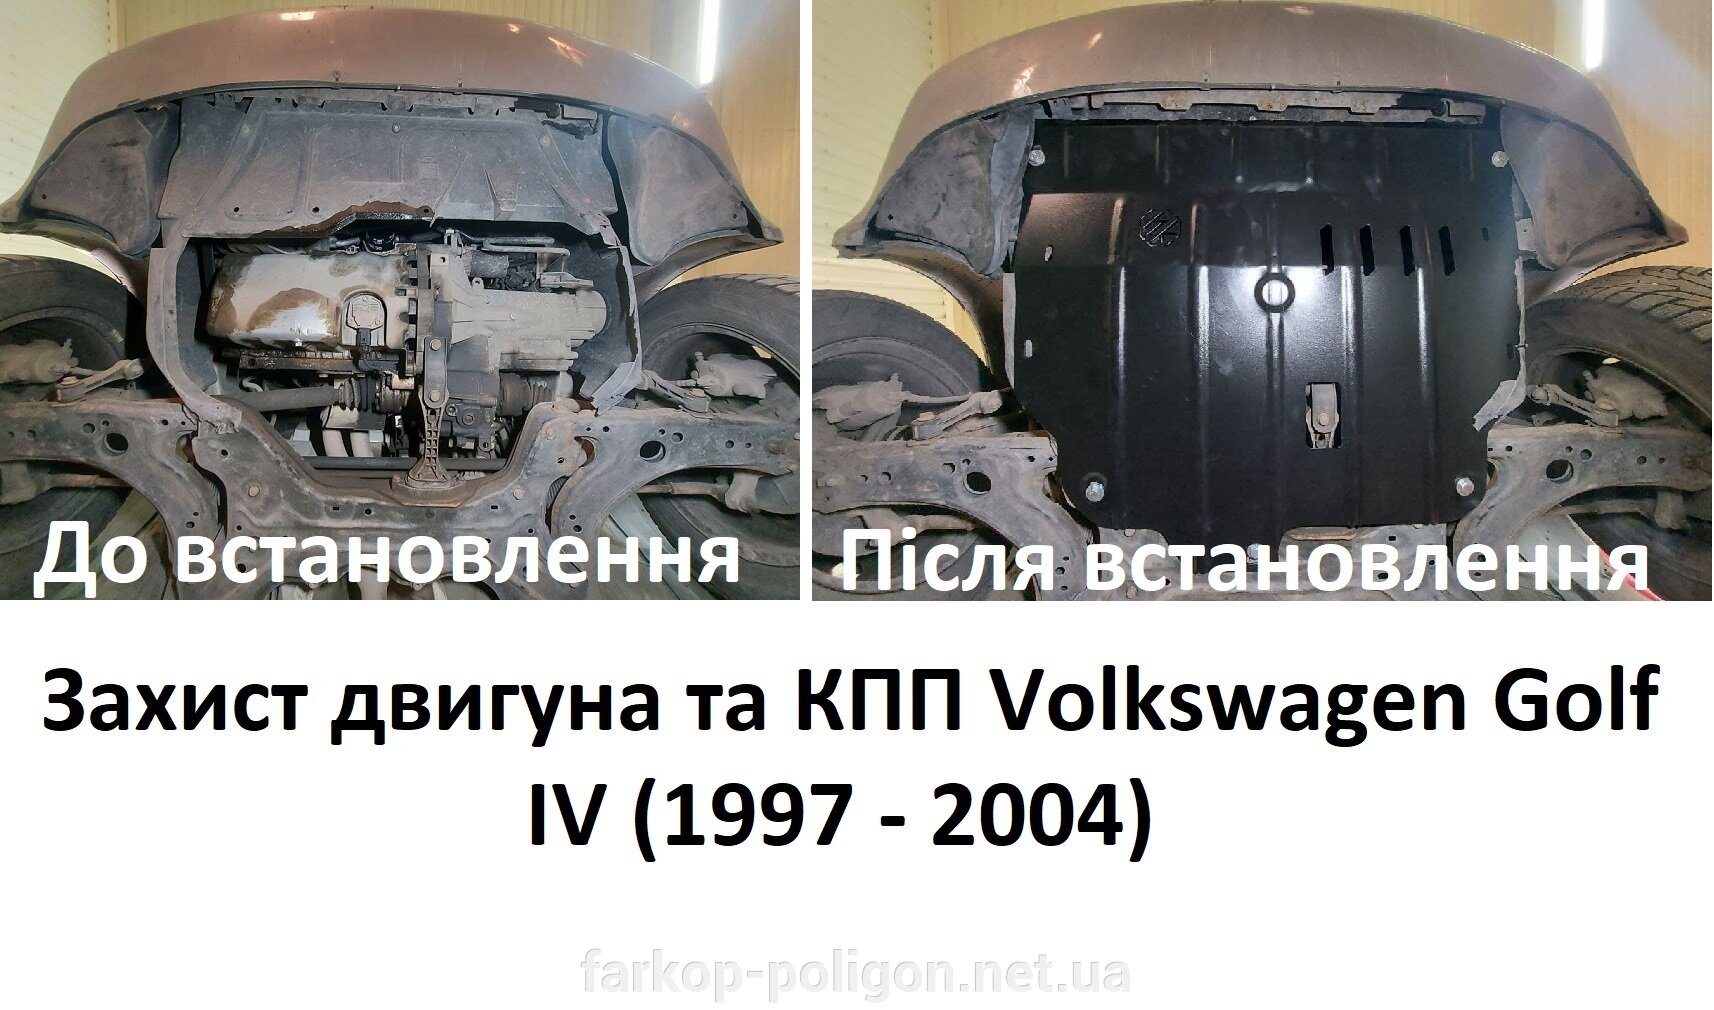 Захист двигуна та КПП Volkswagen Golf IV (1997-2004) до та після встановлення